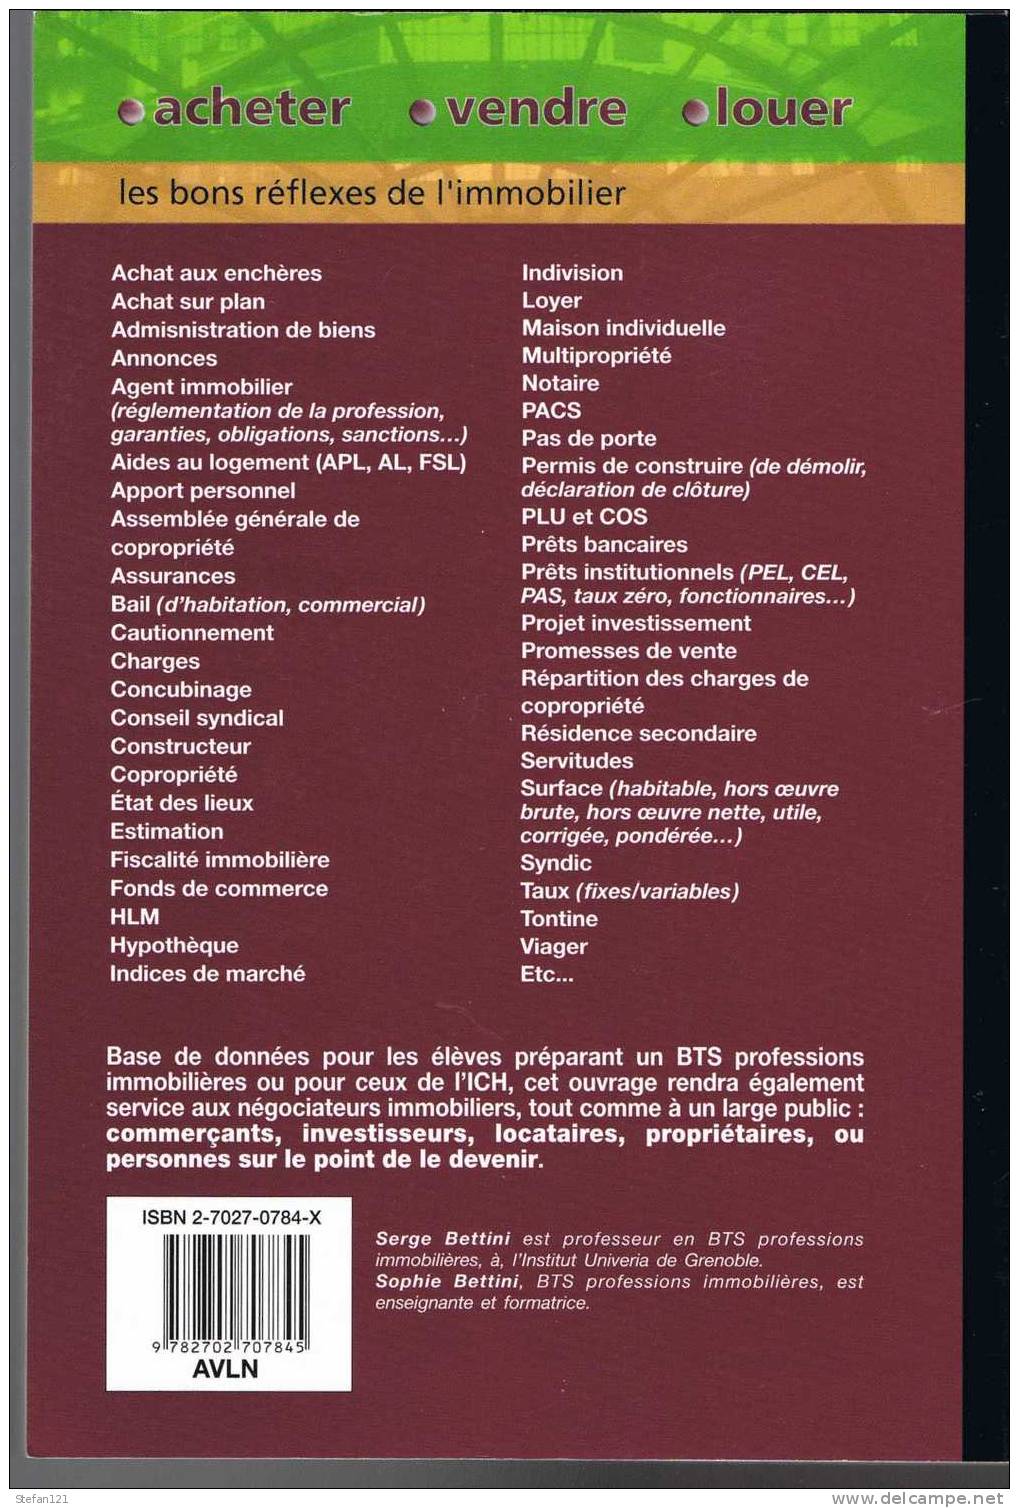 Acheter, Vendre, Louer - Sophie Et Serge Bettini - 2003 - Editeur Chiron - 288 Pages - 24 Cm X 17 Cm -- - Diritto